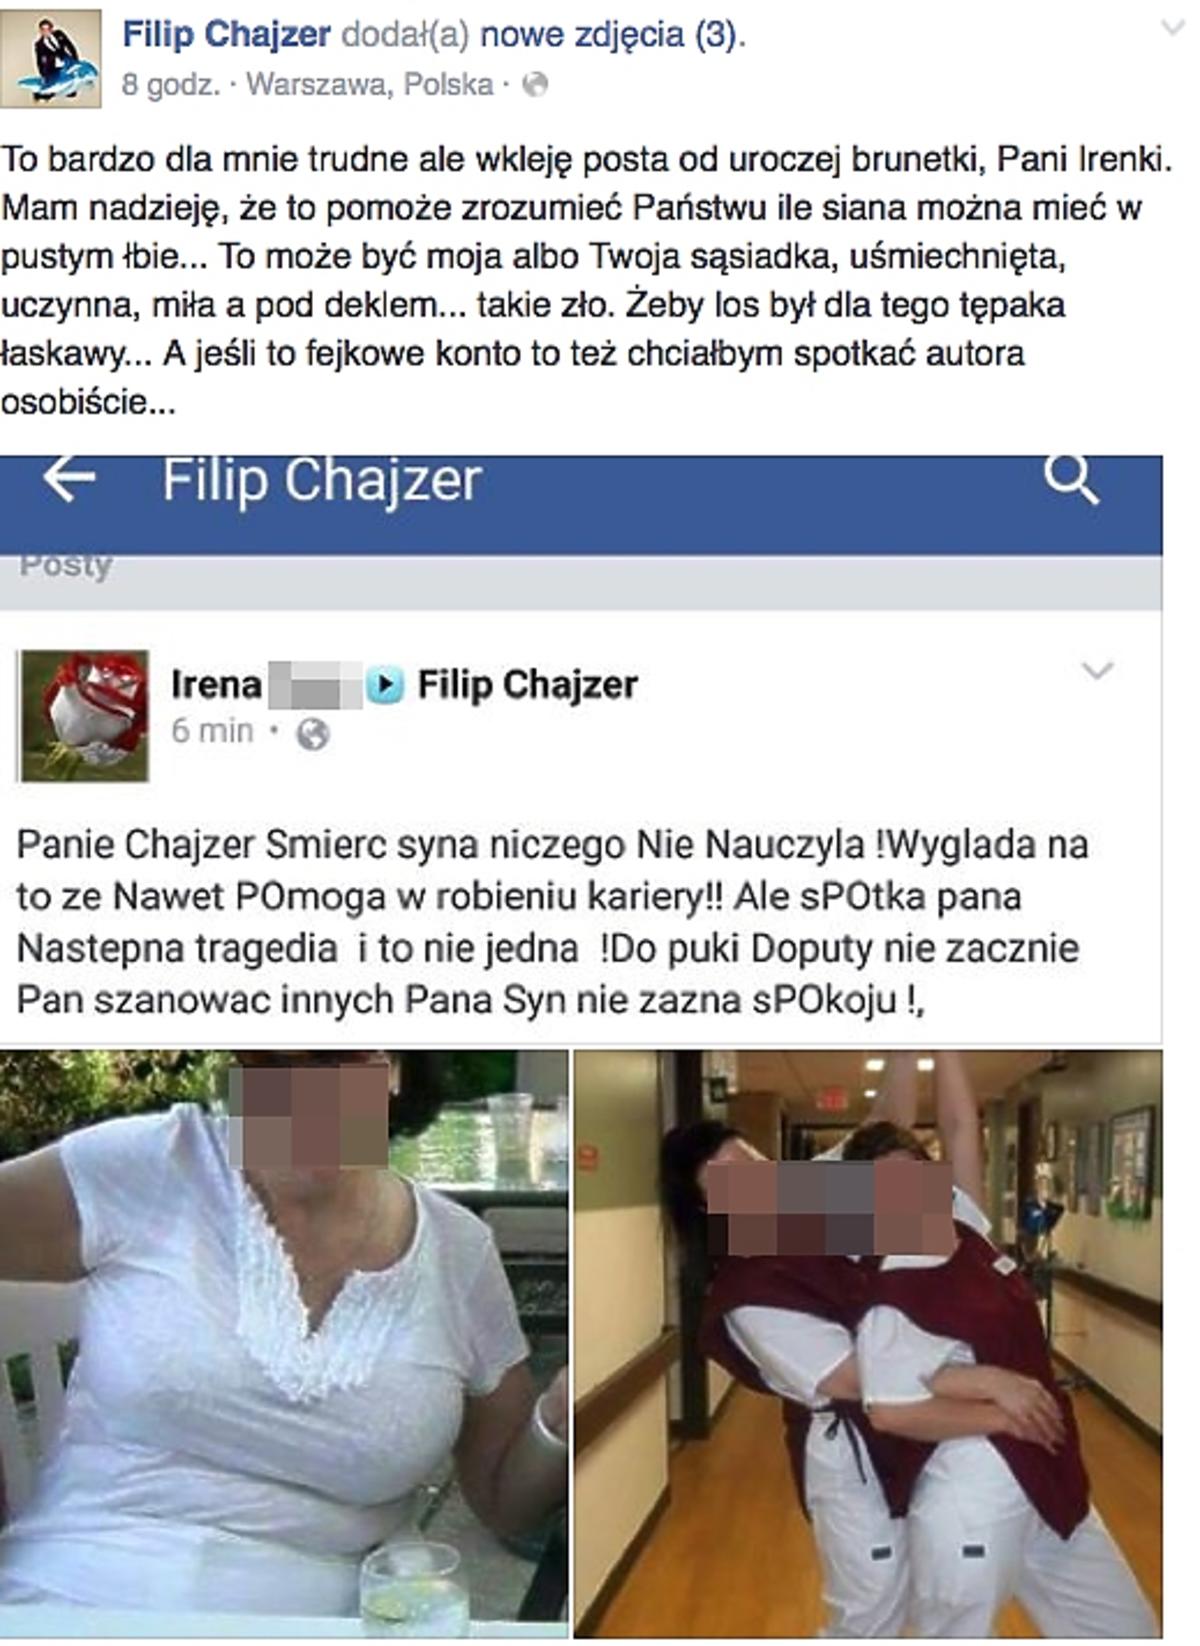 Filip Chajzer ostro zaatakowany przez internautkę